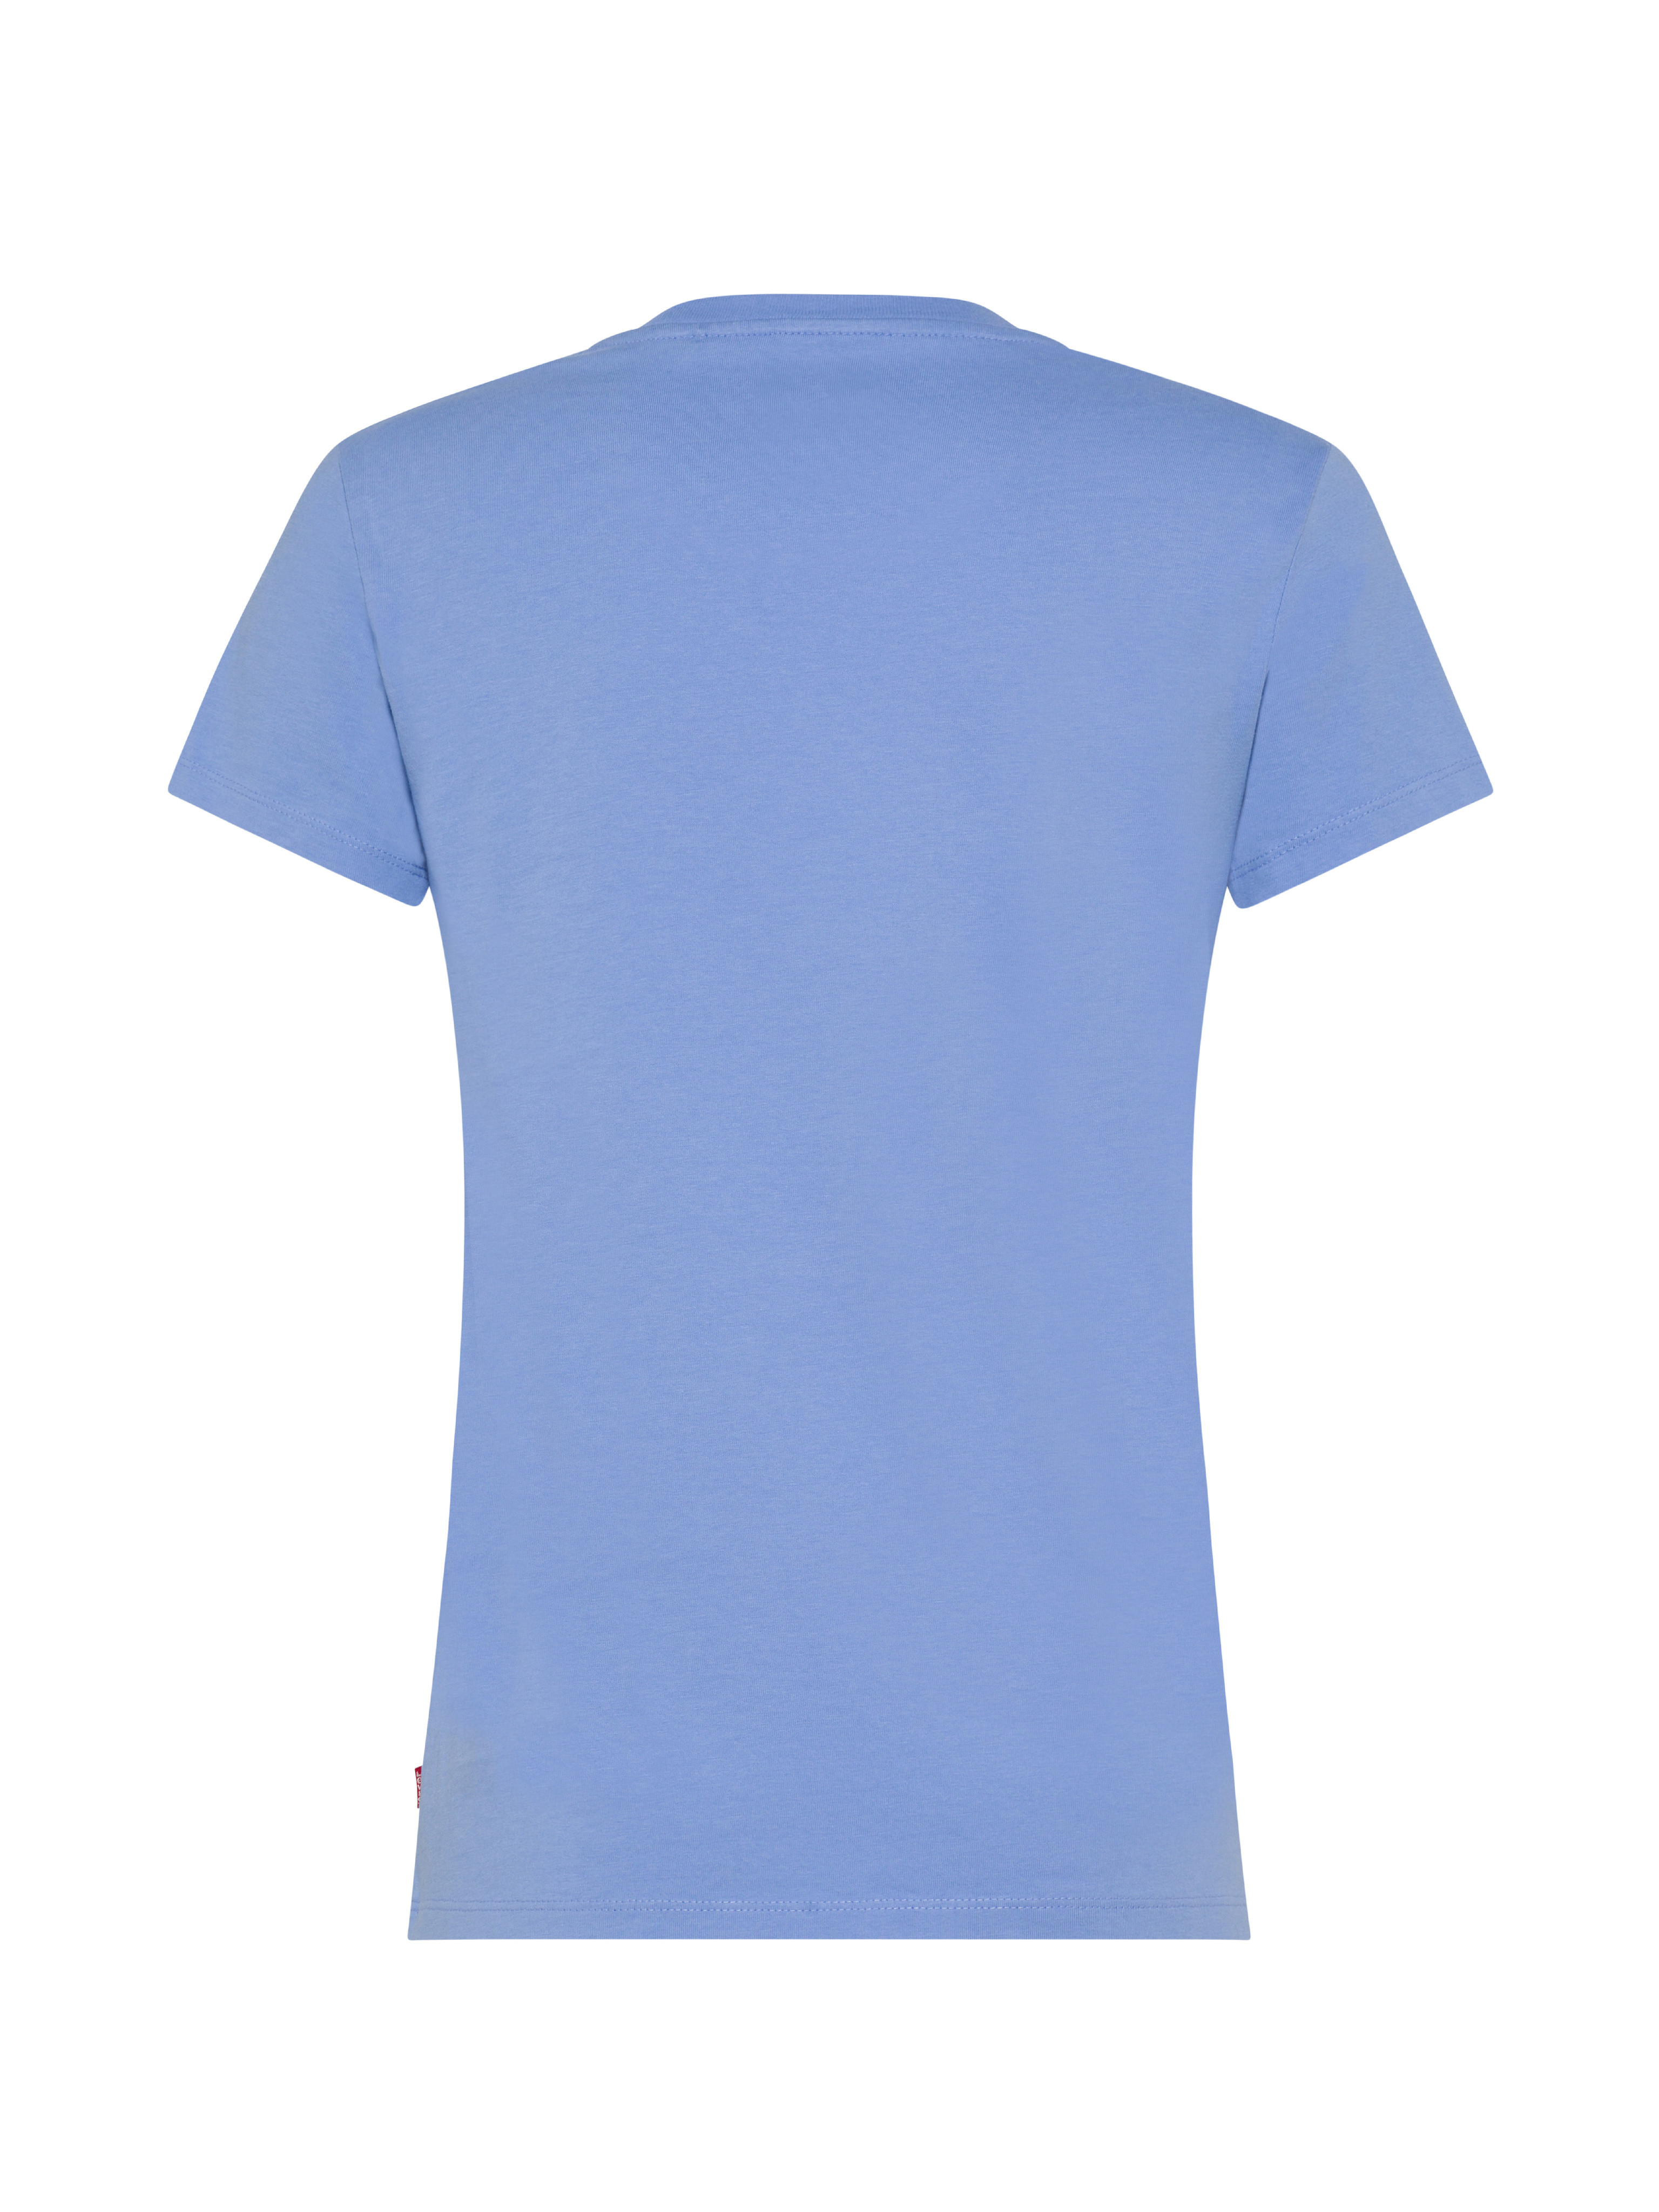 Levi's - Floral Logo T-Shirt, Light Blue, large image number 1